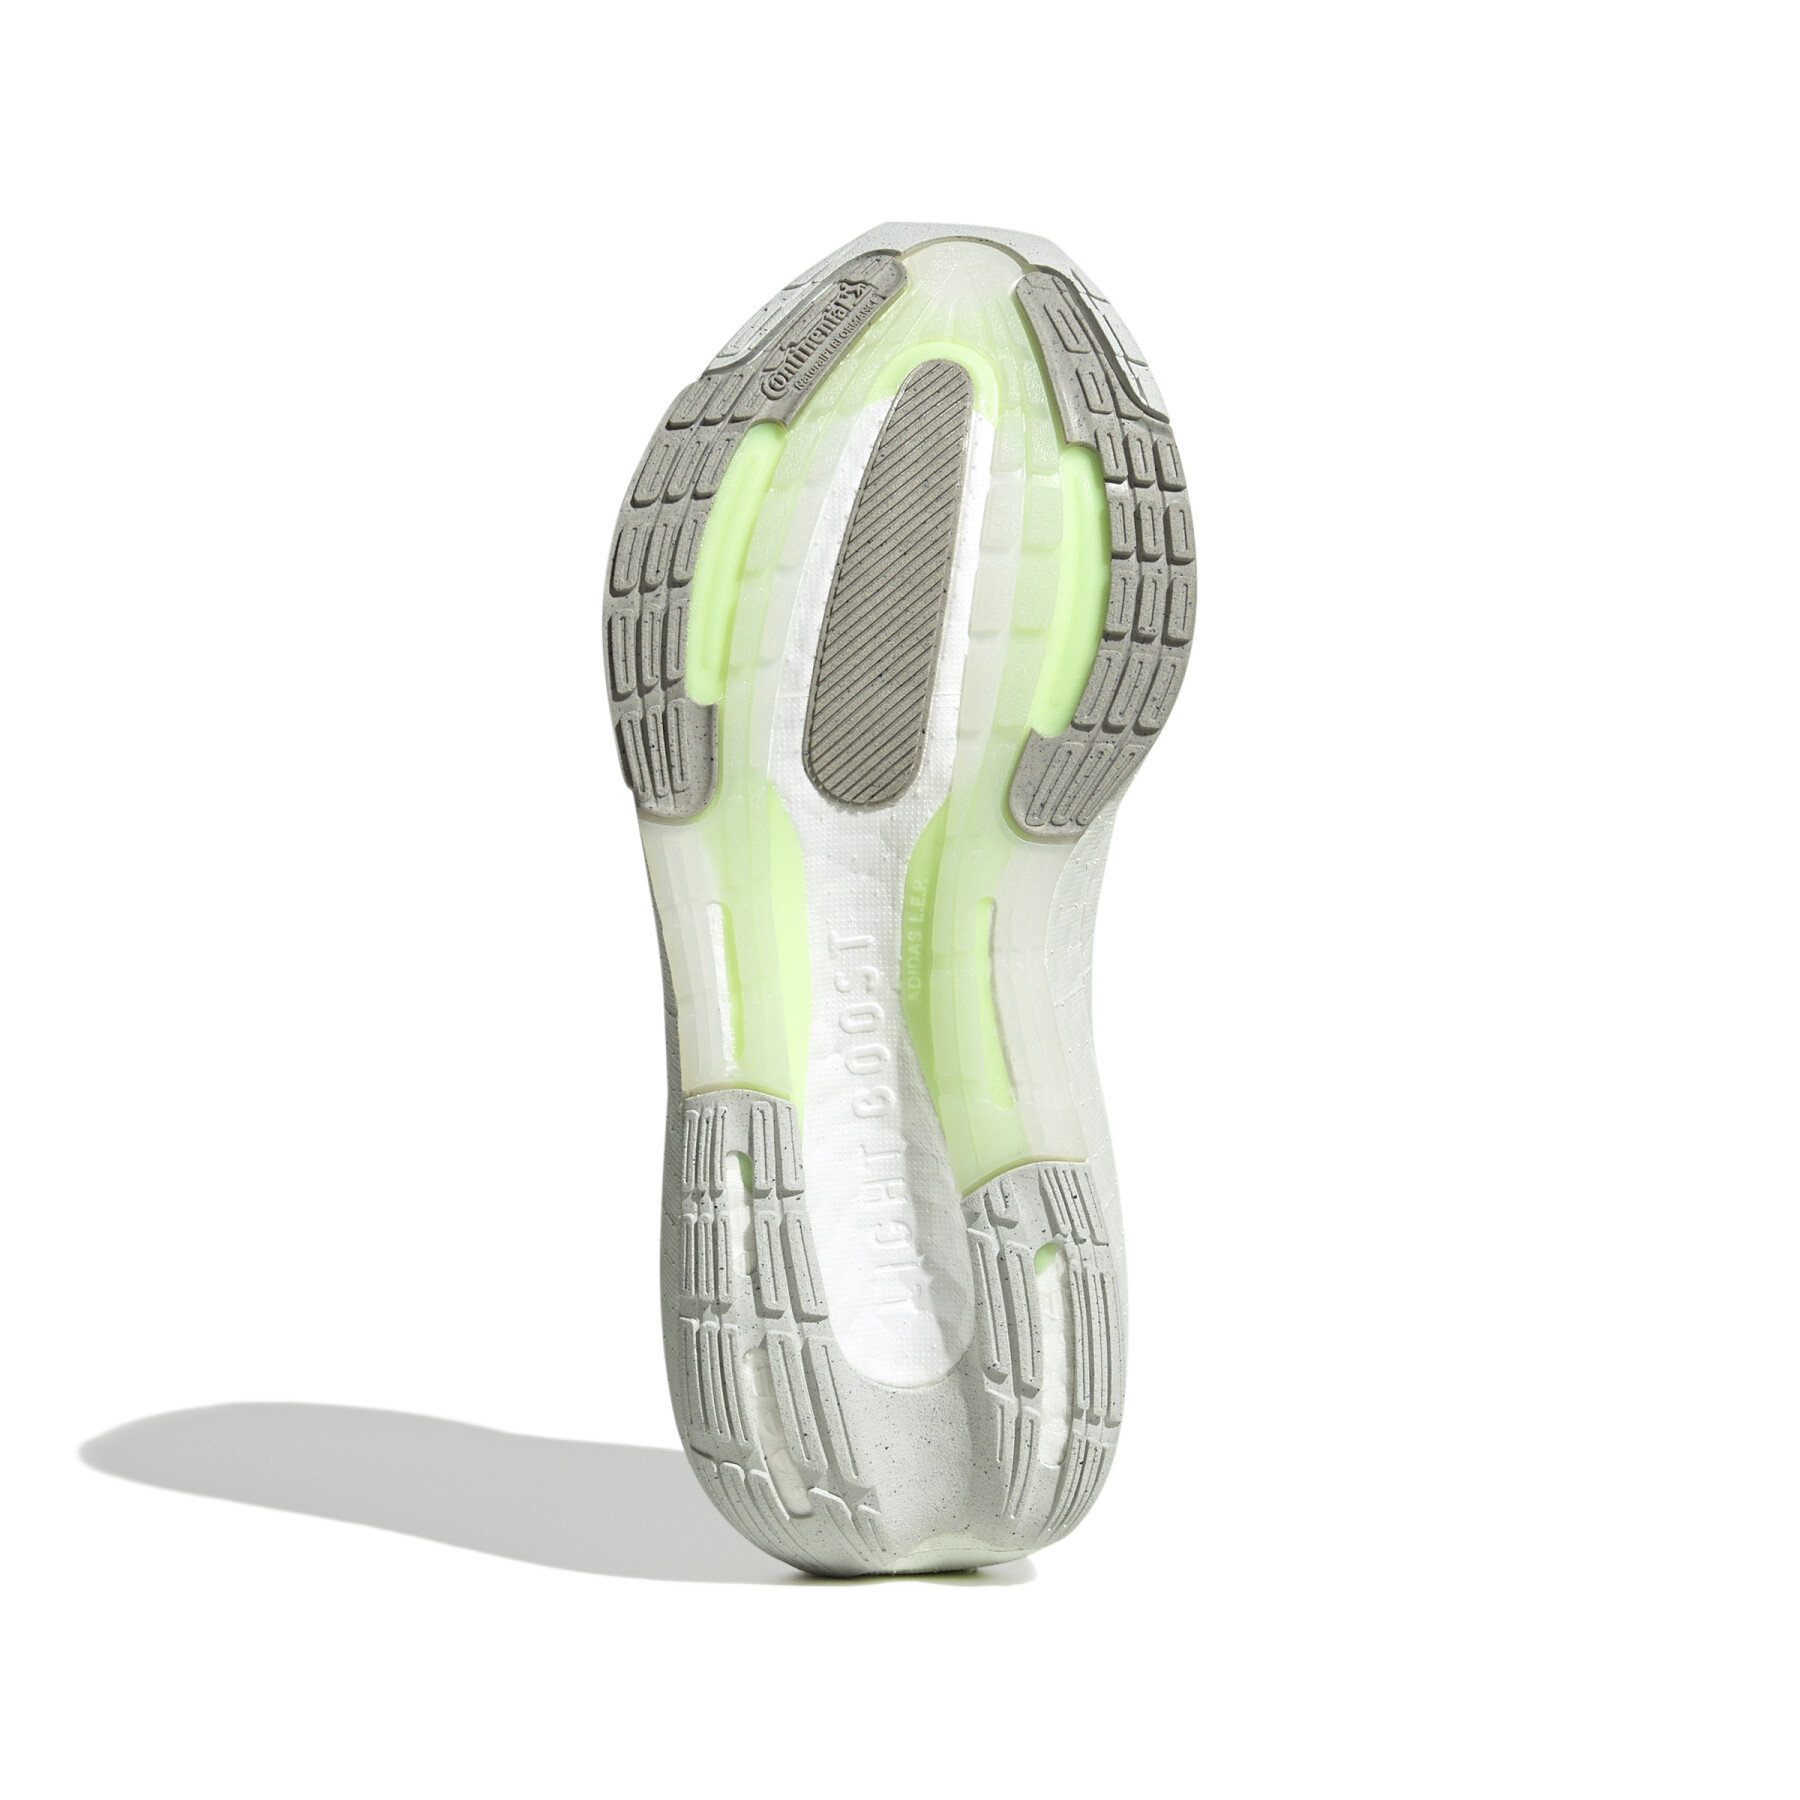 Damen-Laufschuhe adidas Ultraboost Light